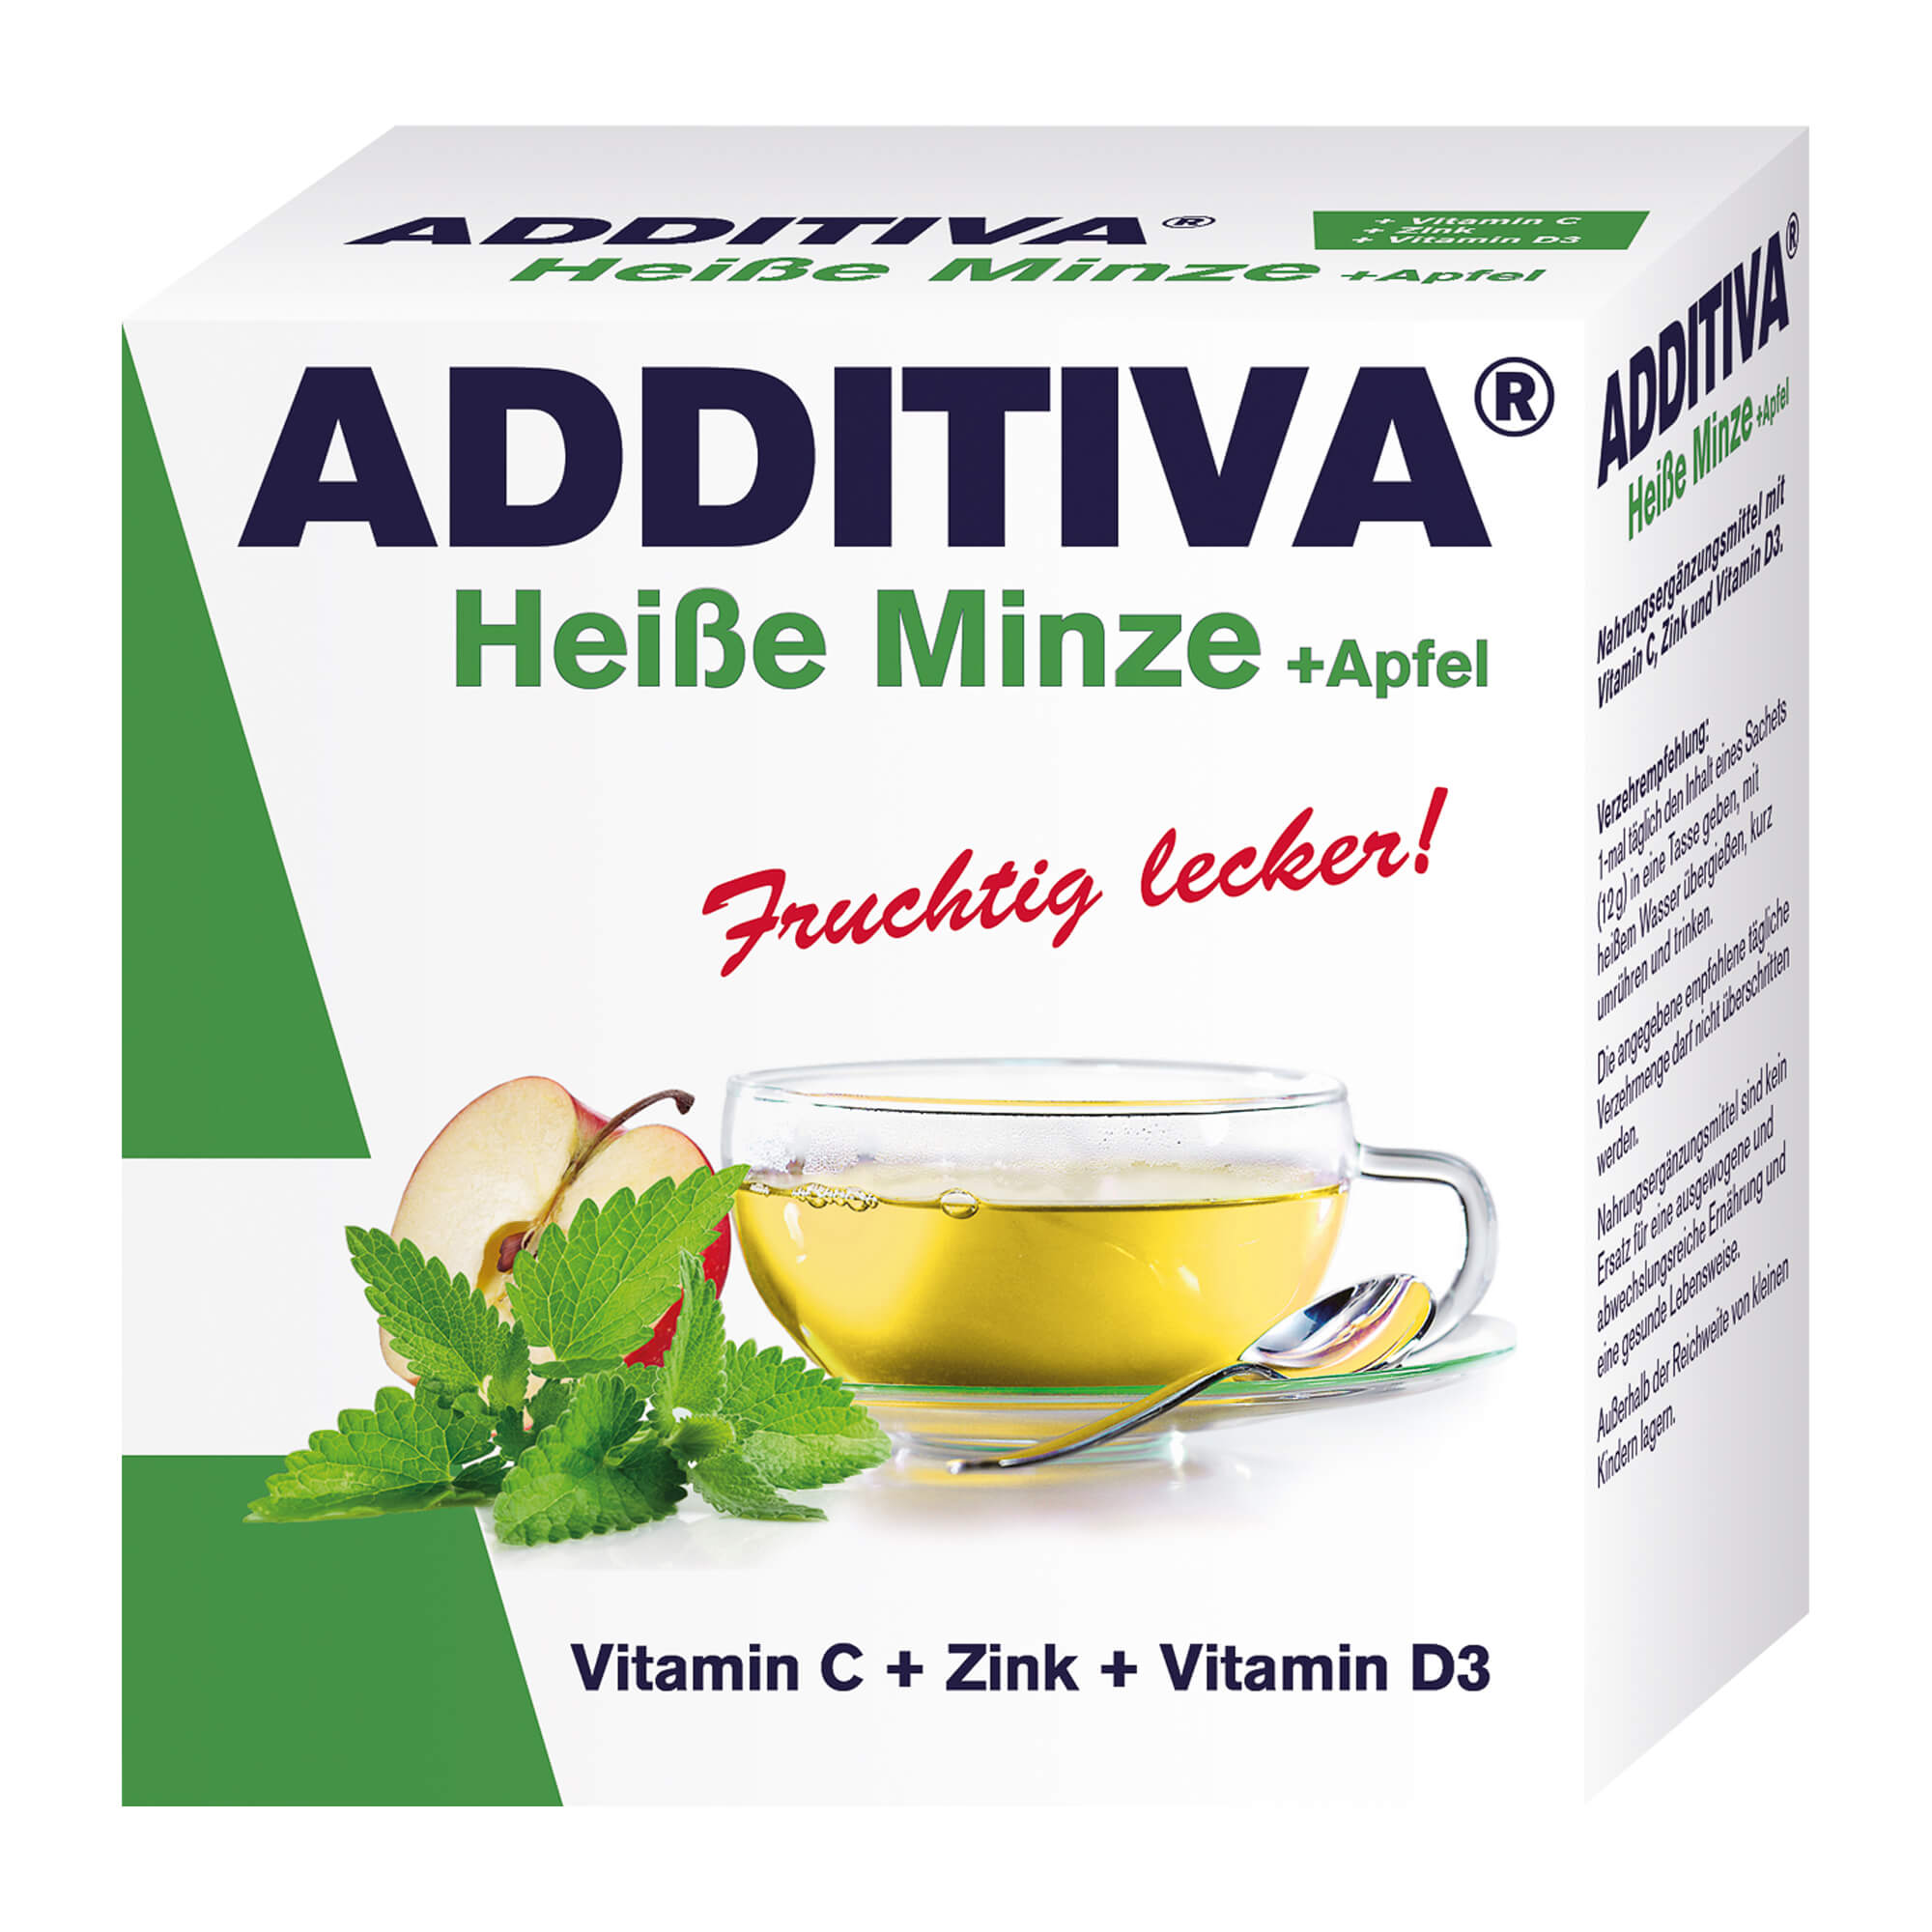 Nahrungsergänzungsmittel mit Vitamin C, Zink und Vitamin D3. Mit Minze- und Apfelaroma.